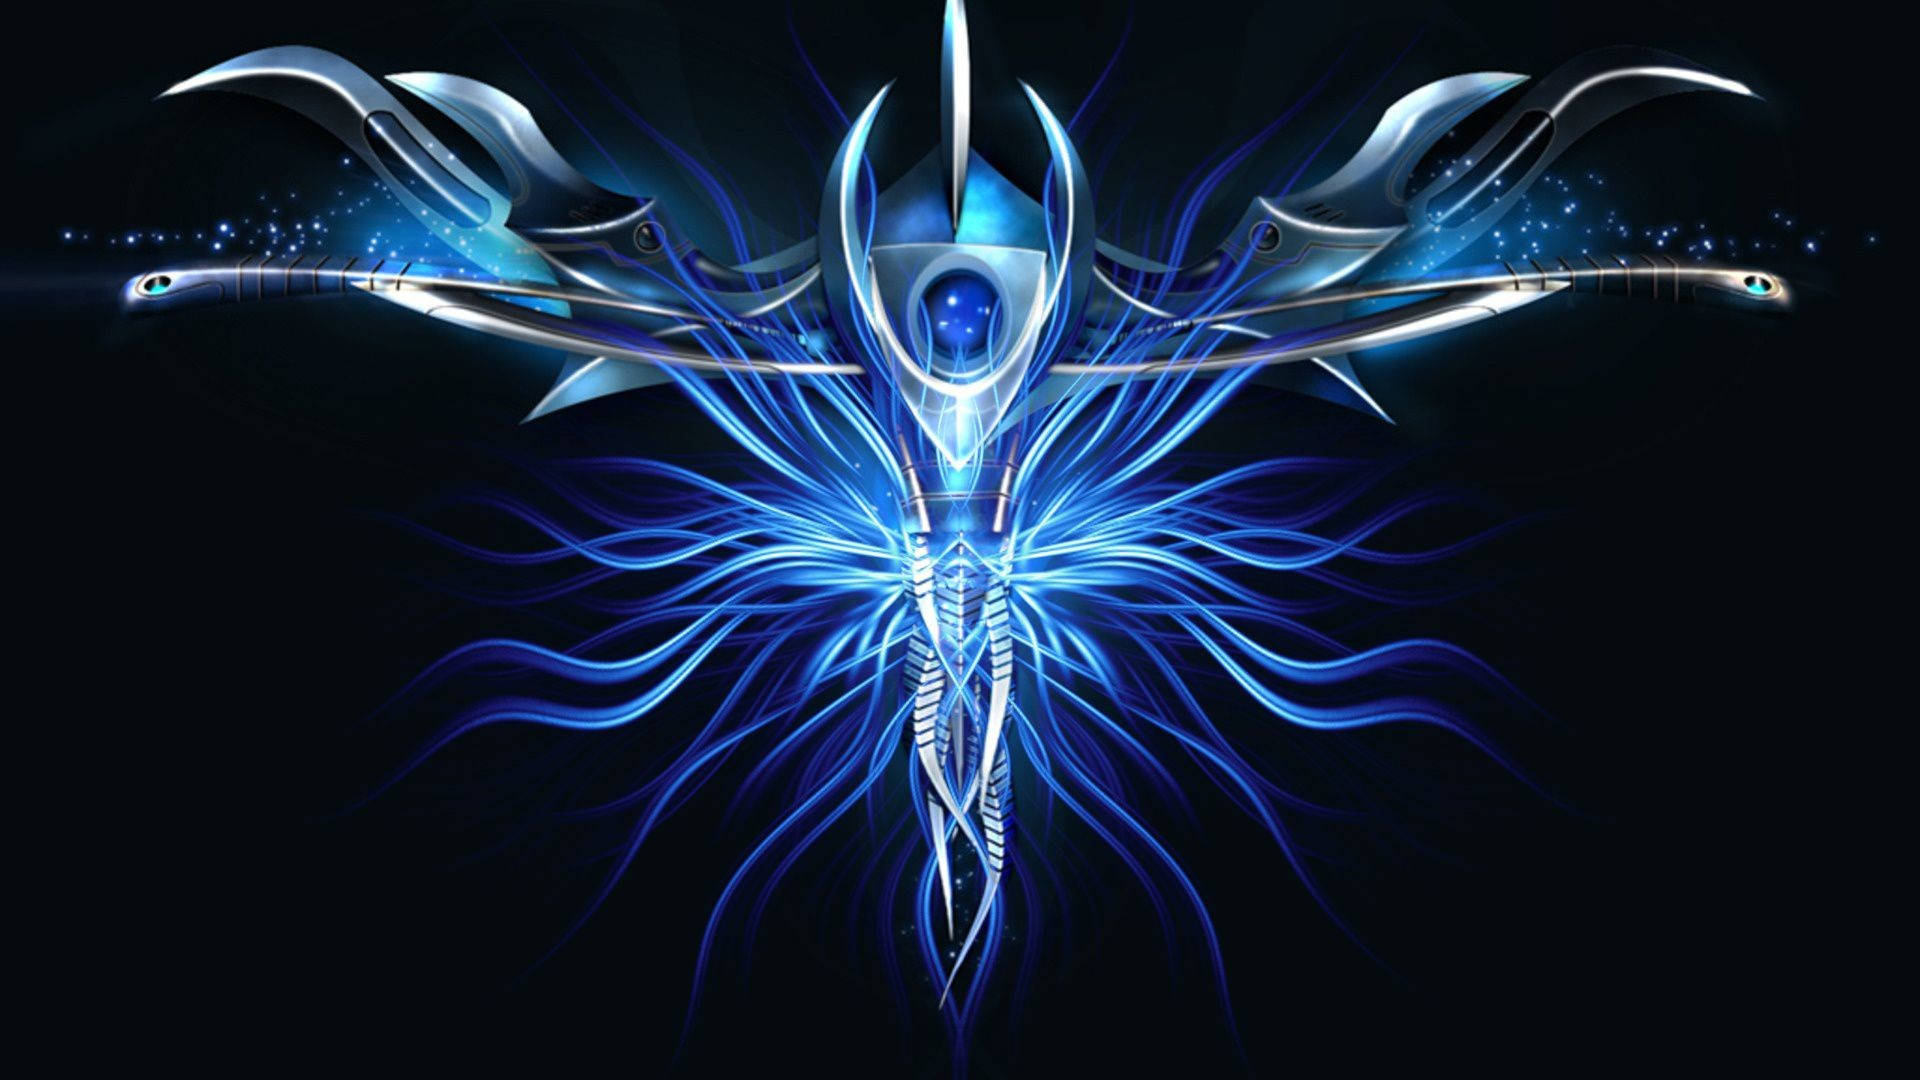 Light Blue Abstract Sword 1080p Hd Desktop Wallpaper